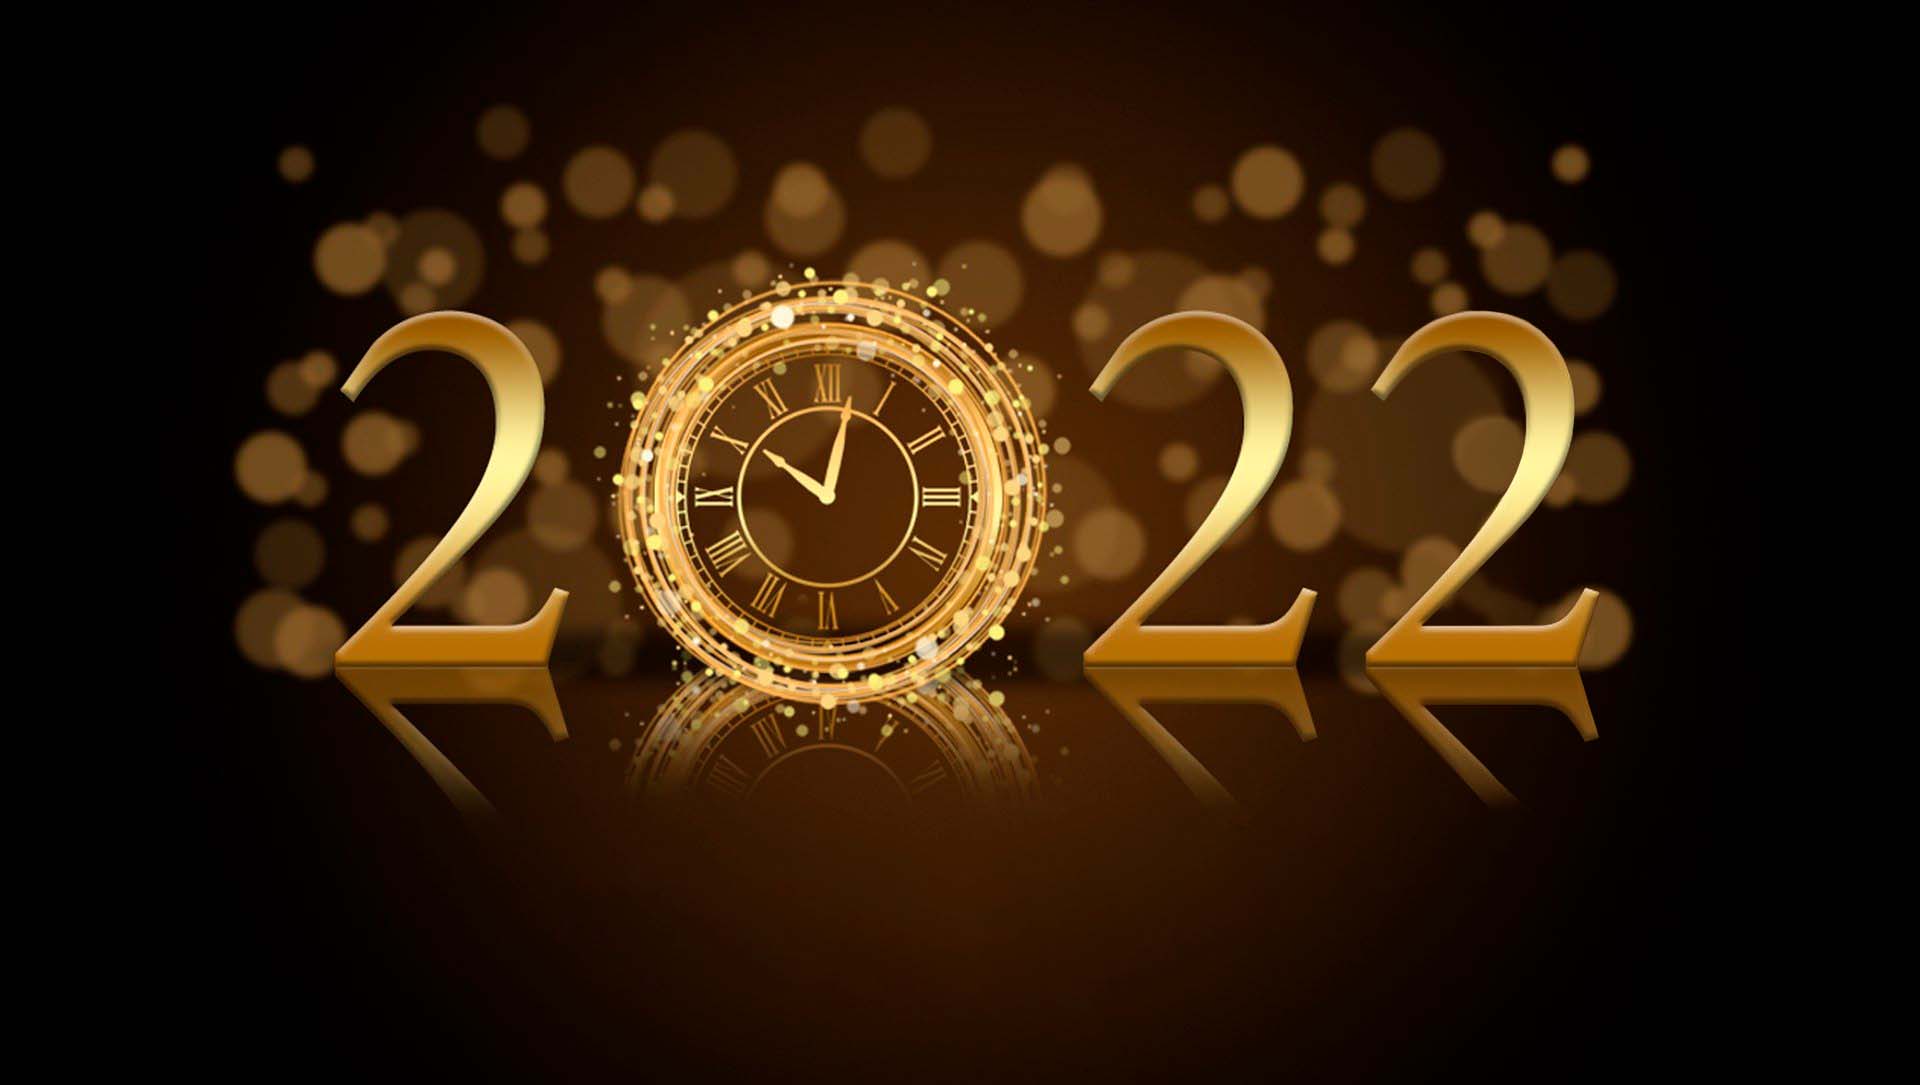 Šťastný Nový rok 2022!